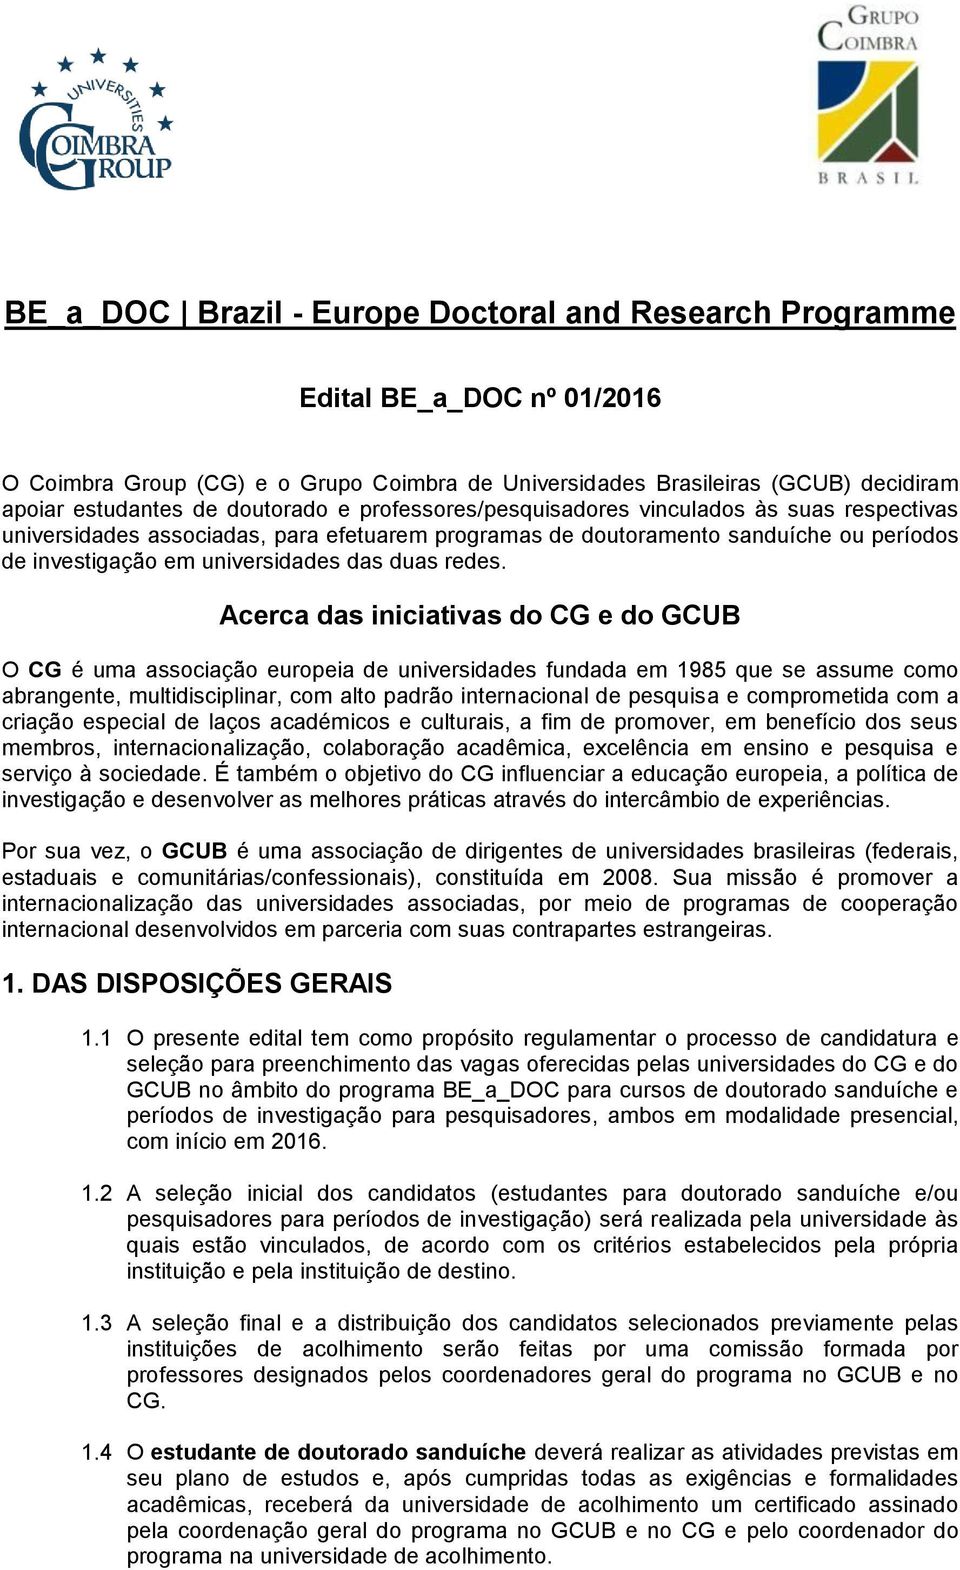 Acerca das iniciativas do CG e do GCUB O CG é uma associação europeia de universidades fundada em 1985 que se assume como abrangente, multidisciplinar, com alto padrão internacional de pesquisa e